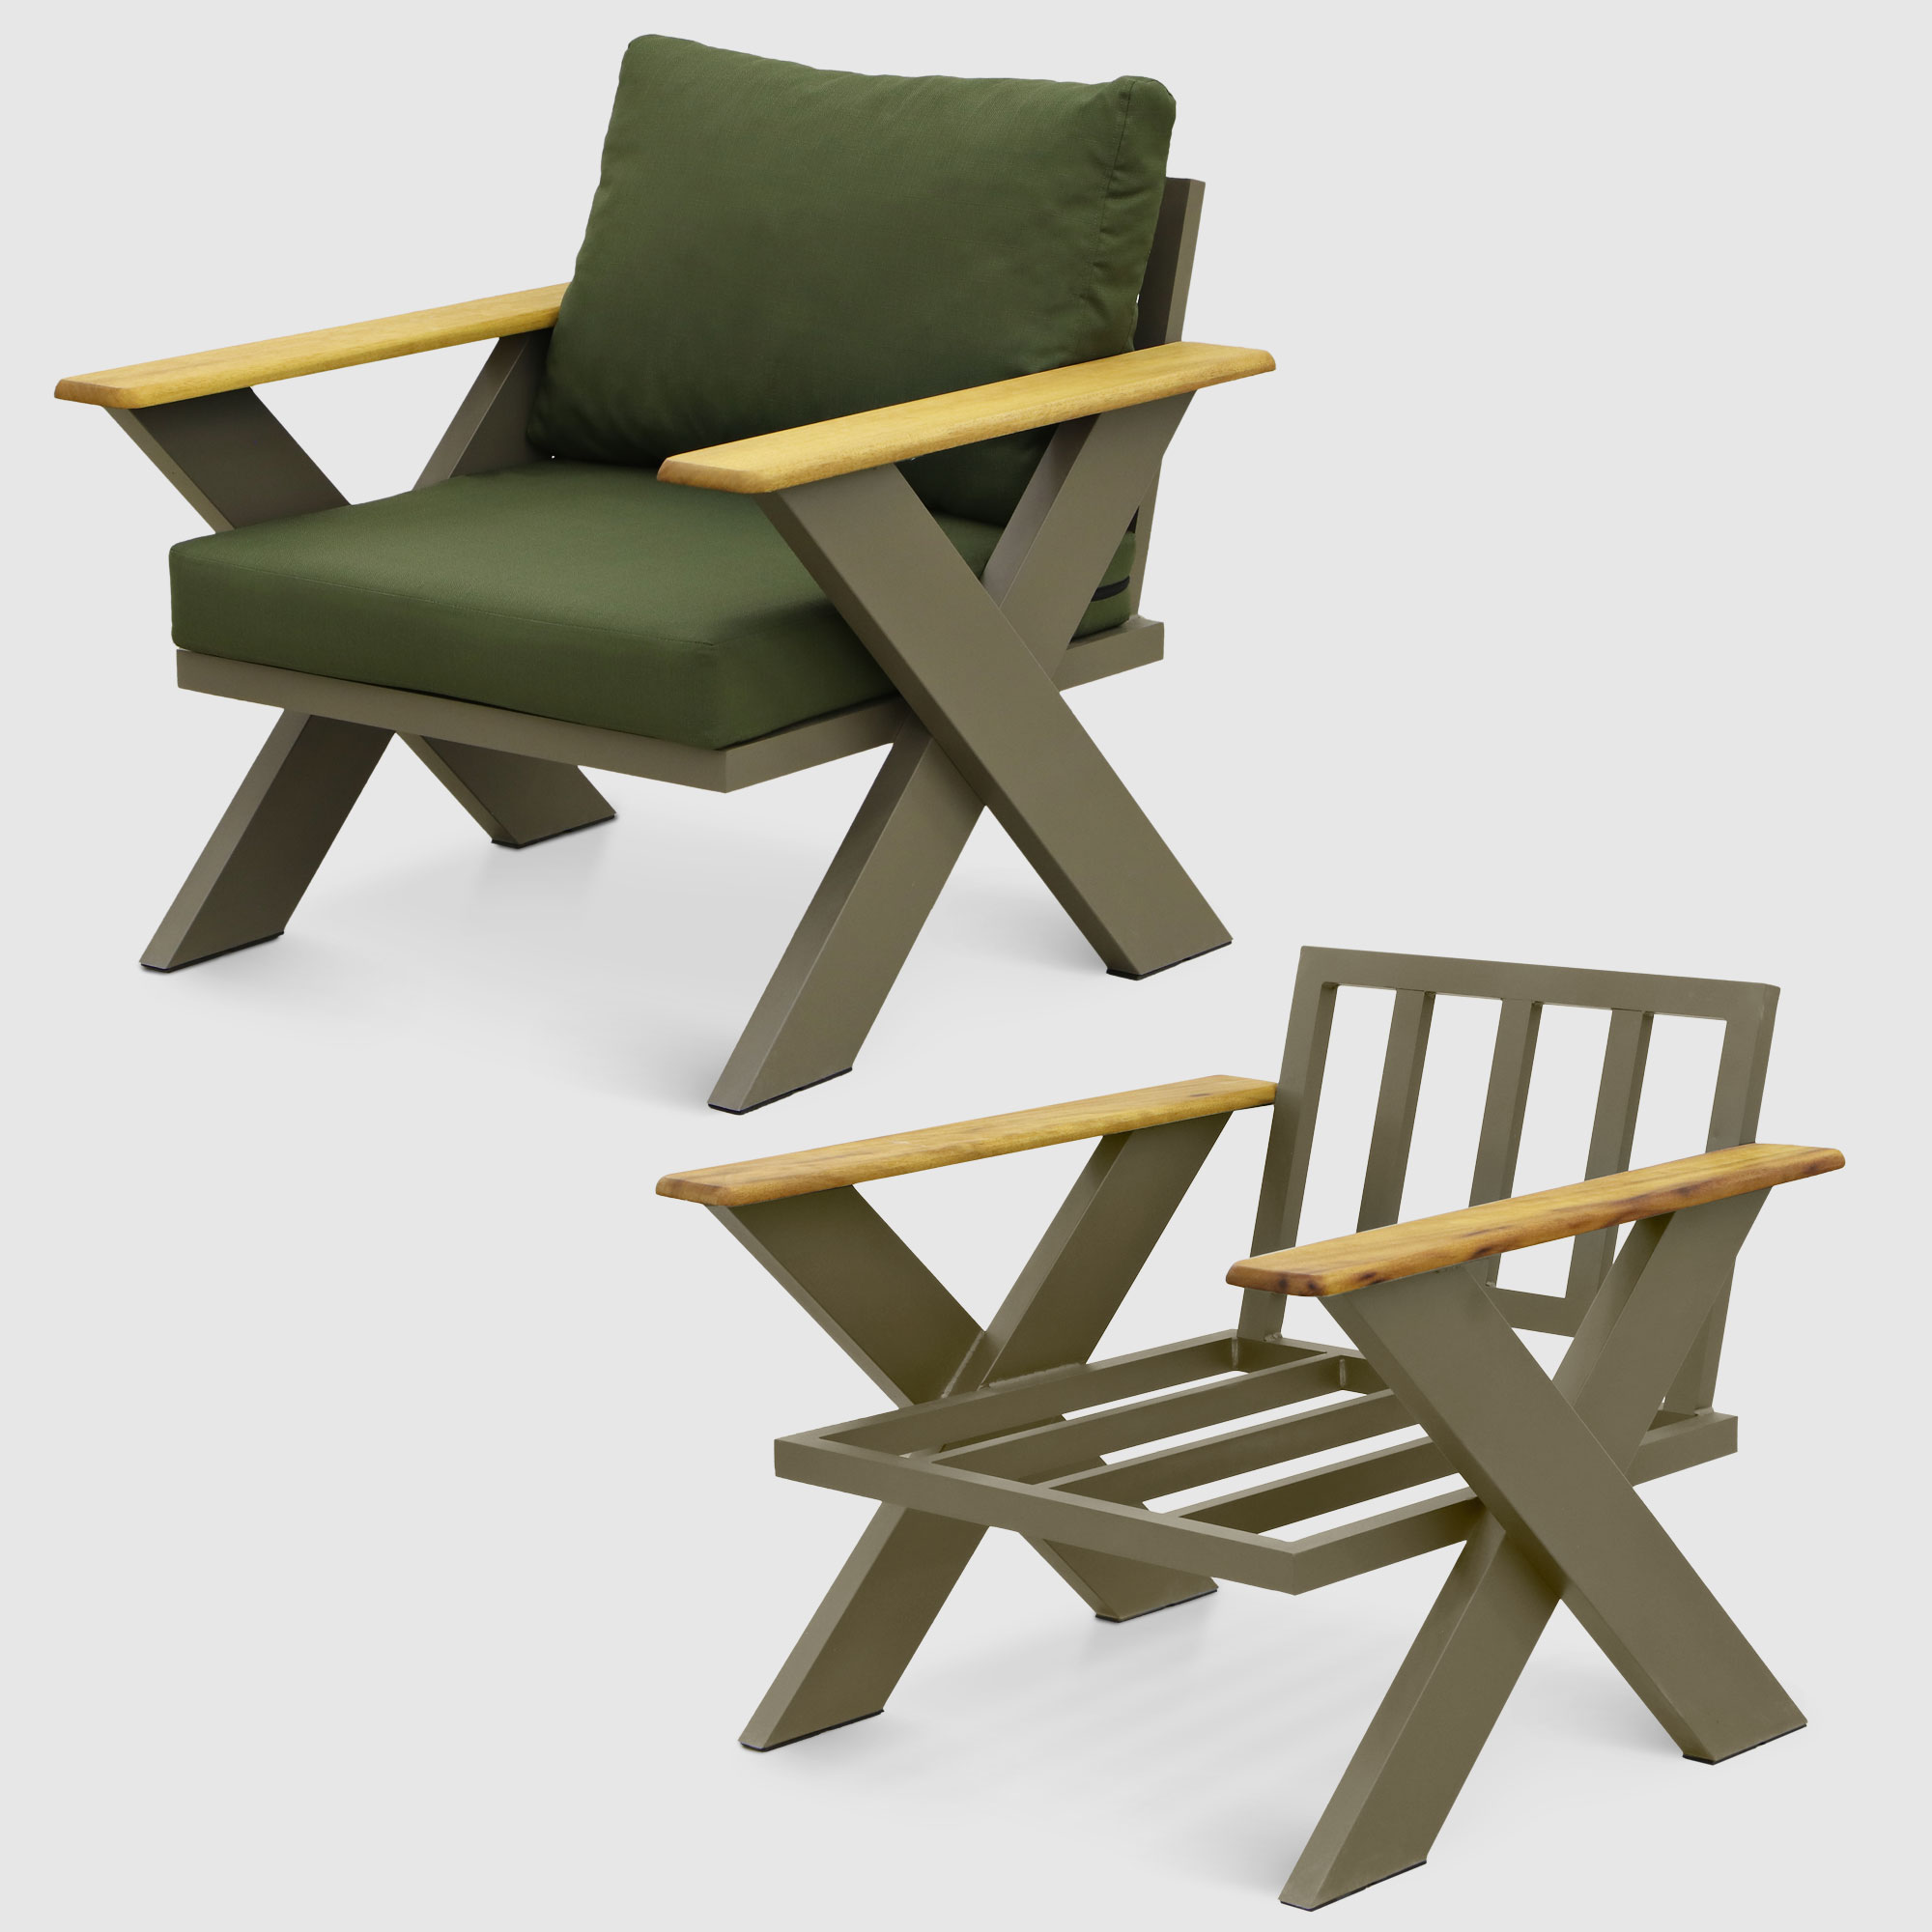 Комплект мебели Emek garden Toledo зеленый 4 предмета, цвет оливковый, размер 170х80х90 - фото 9